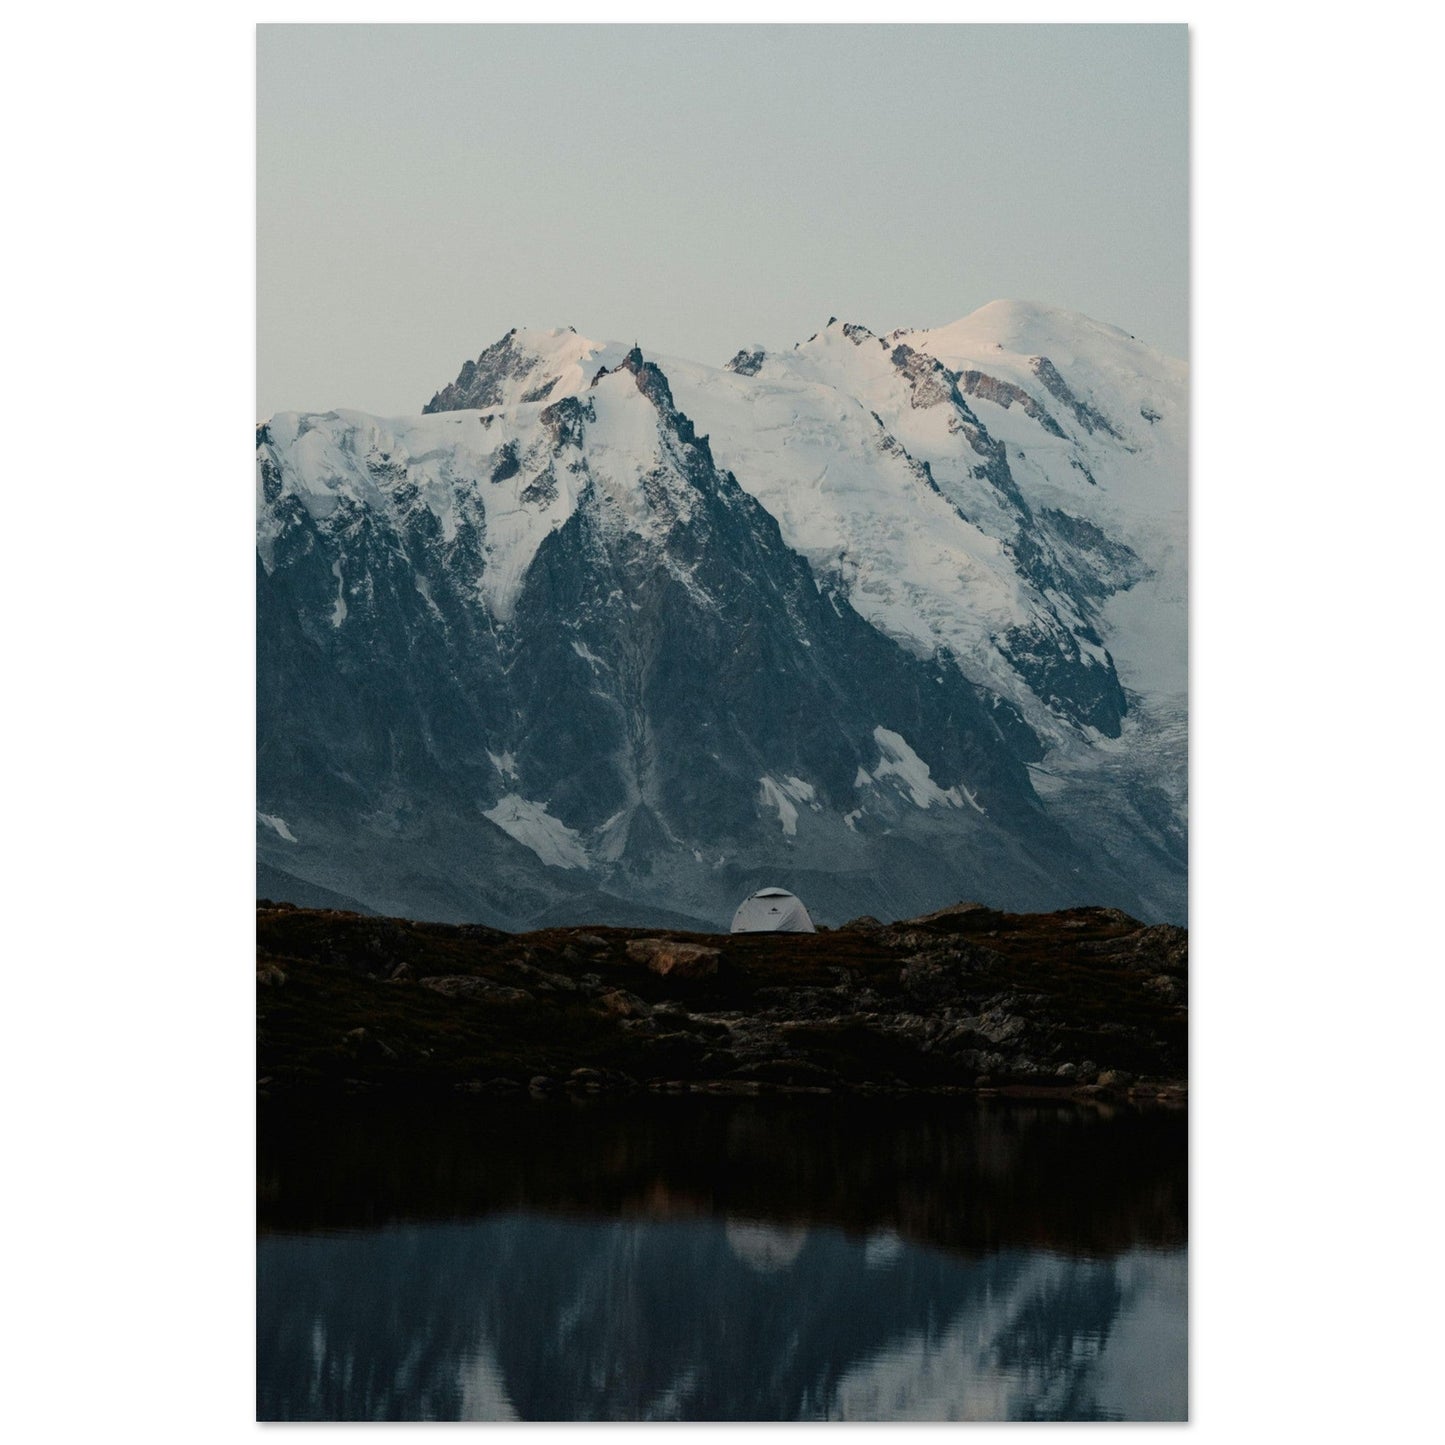 Vente Photo du Lac Blanc et du Mont-Blanc, Chamonix - Tableau photo alu montagne